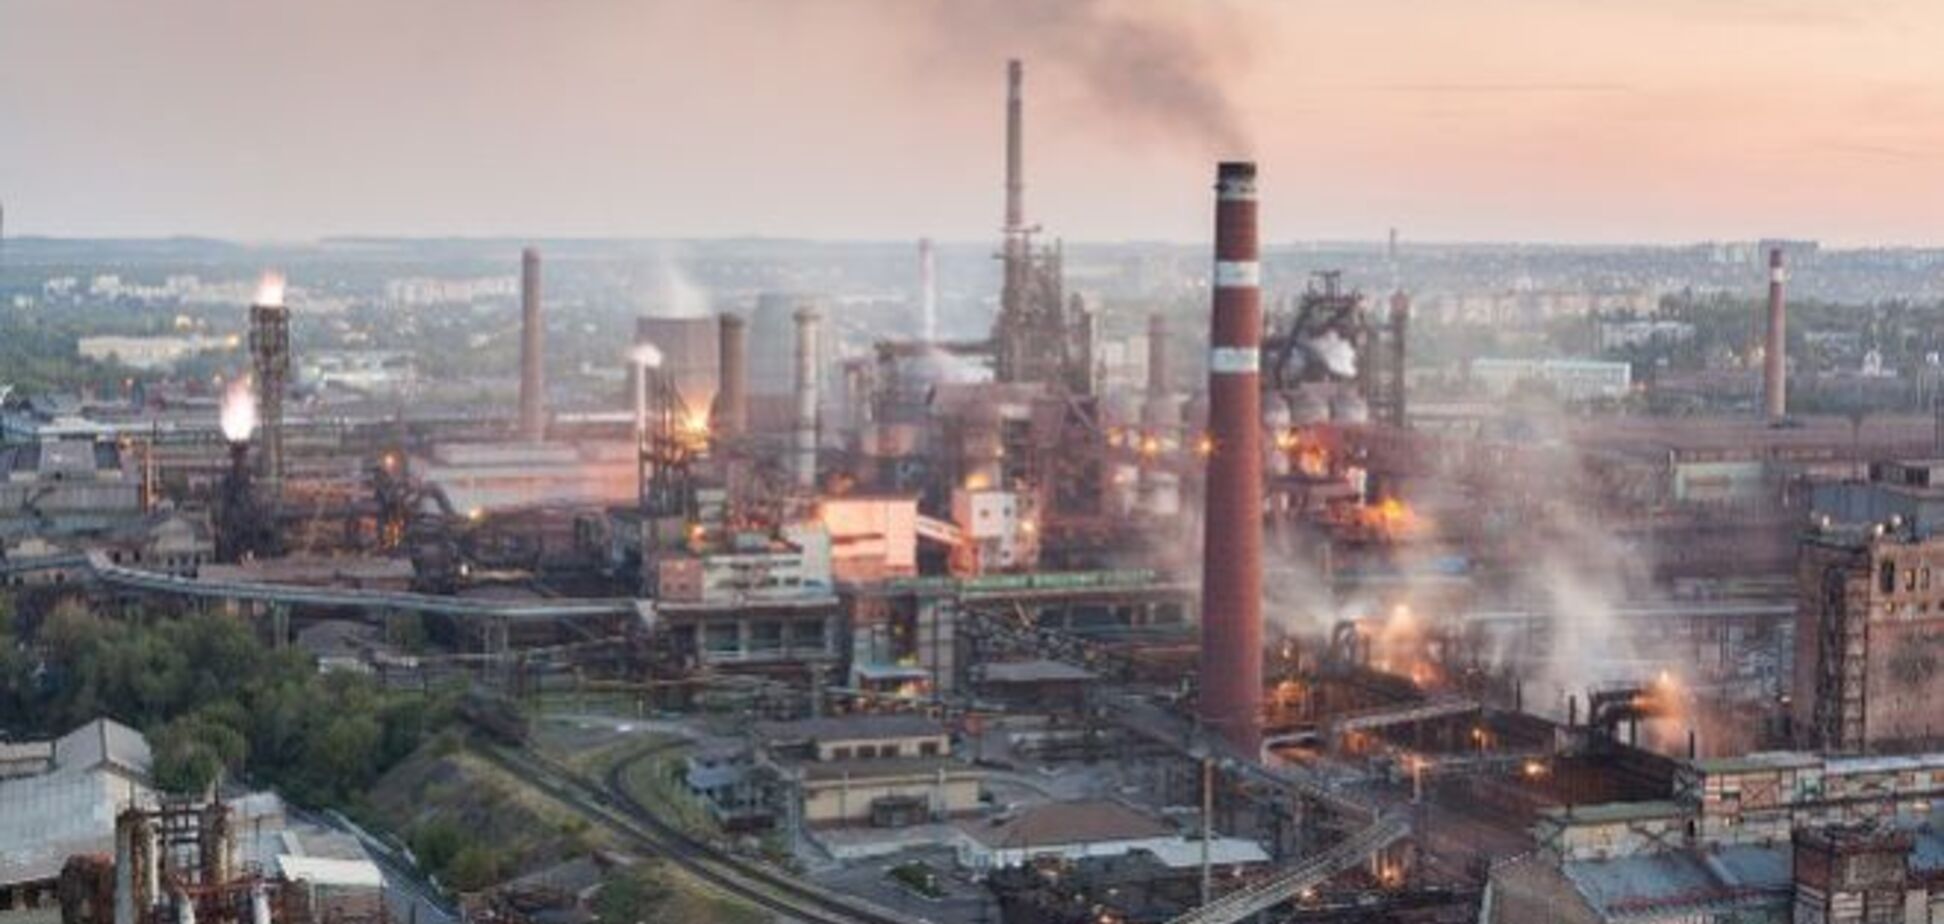 Промисловість Донбасу в агонії: за три місяці спад більш ніж в 2 рази